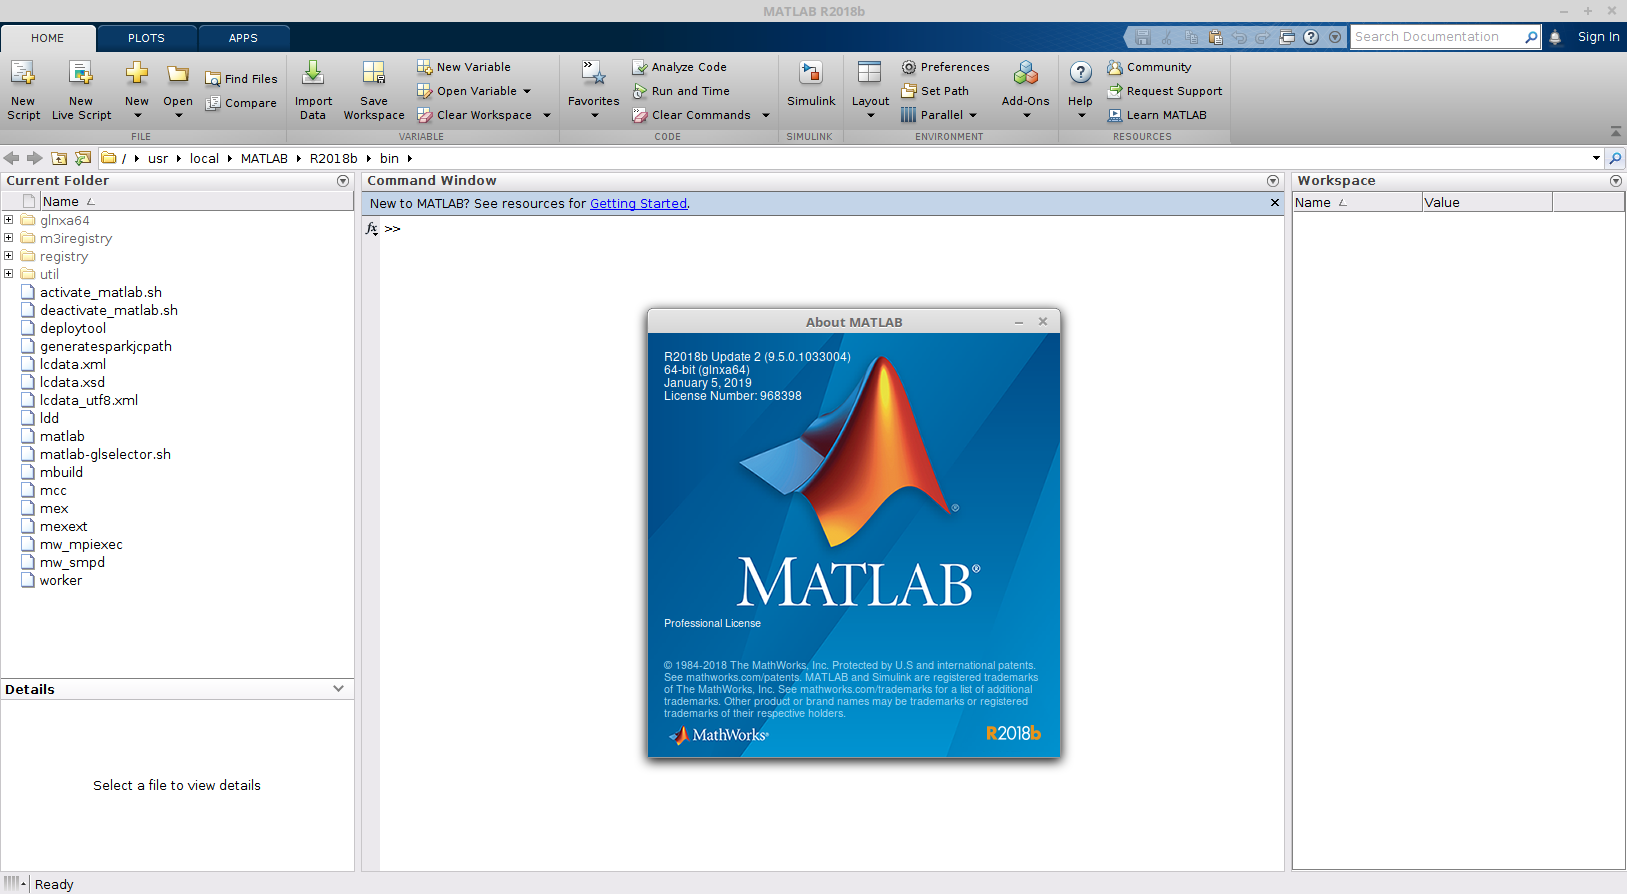 matlab license file download crack